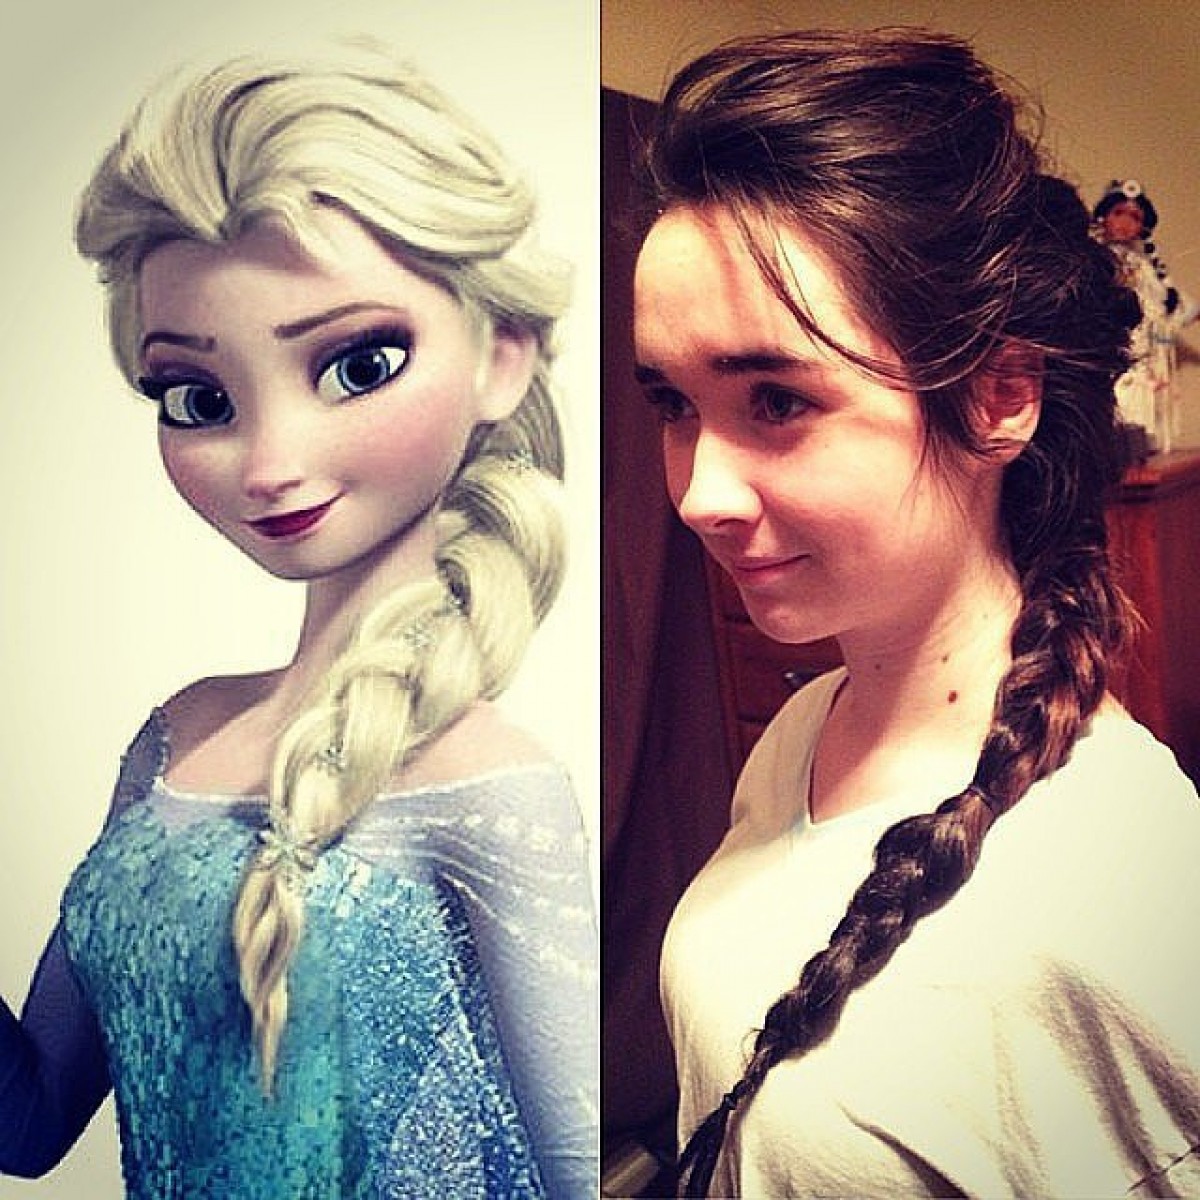 Φτιάξτε τα μαλλιά της όπως οι πριγκίπισσες του Frozen